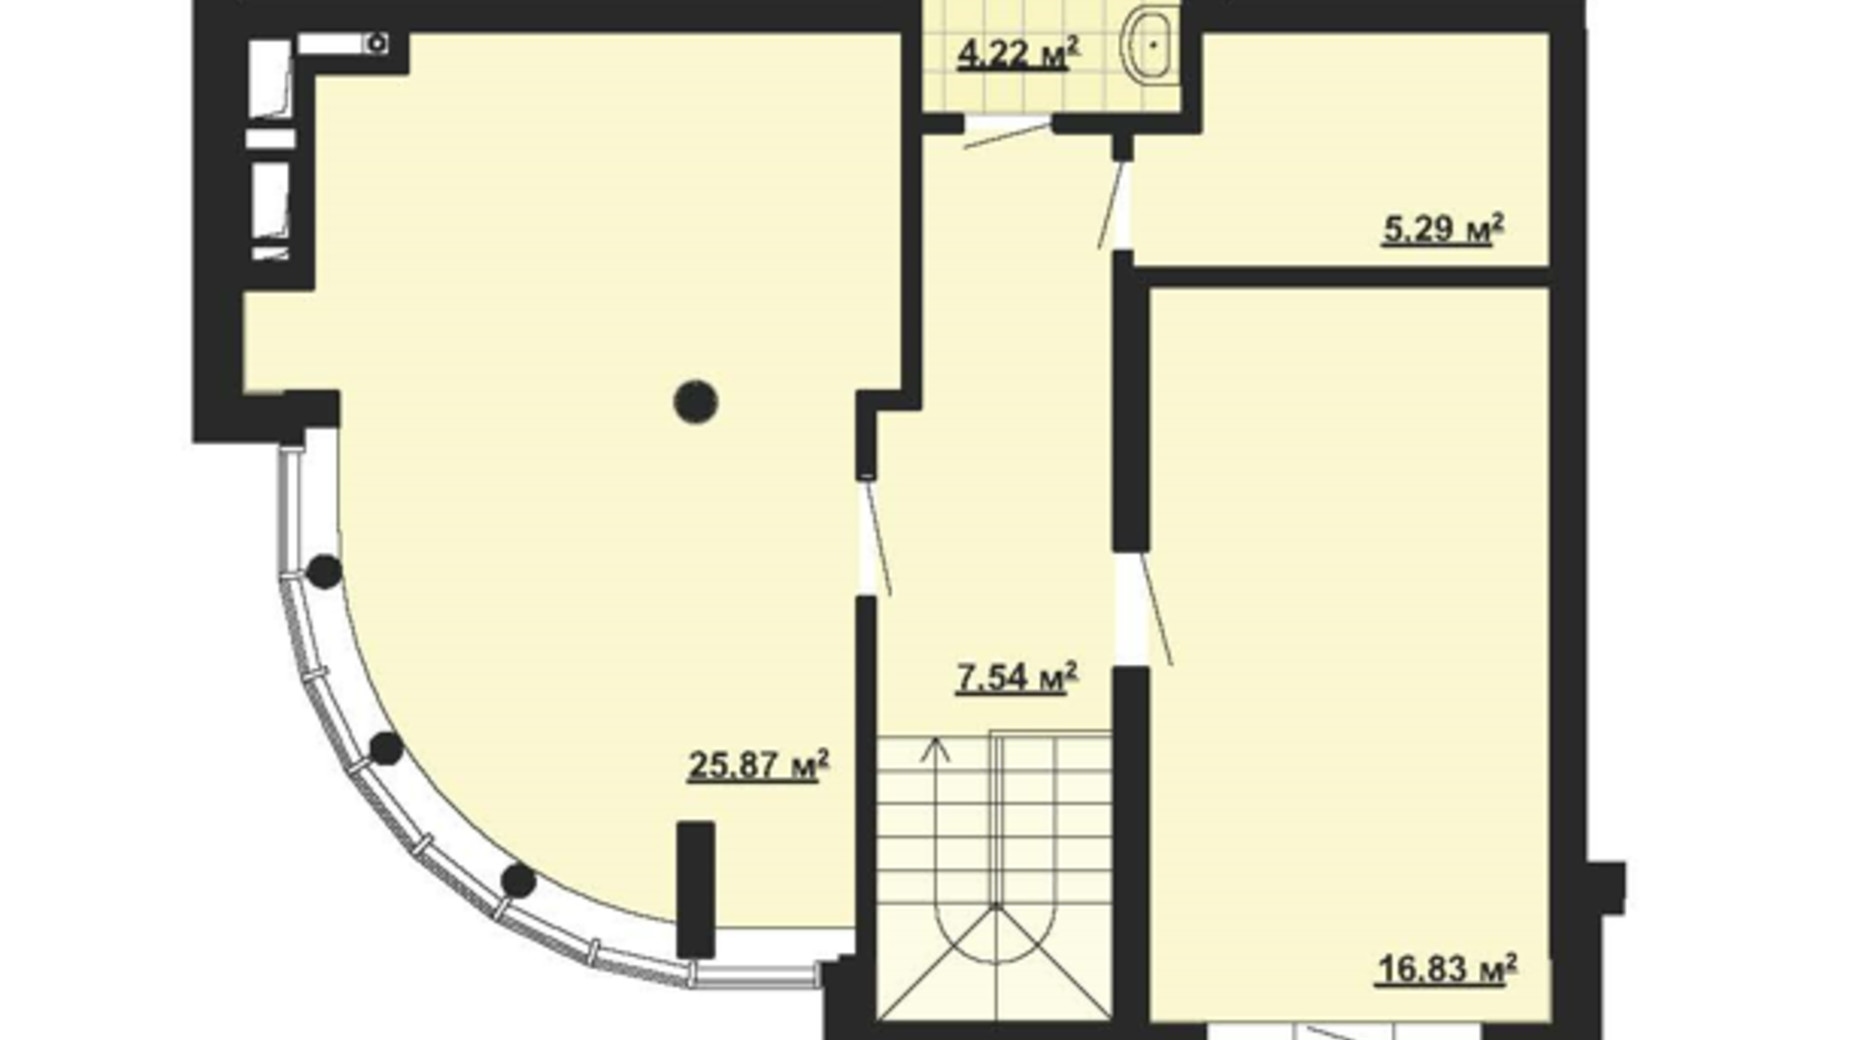 Планировка много­уровневой квартиры в ЖК Парковый Город 111.1 м², фото 650585